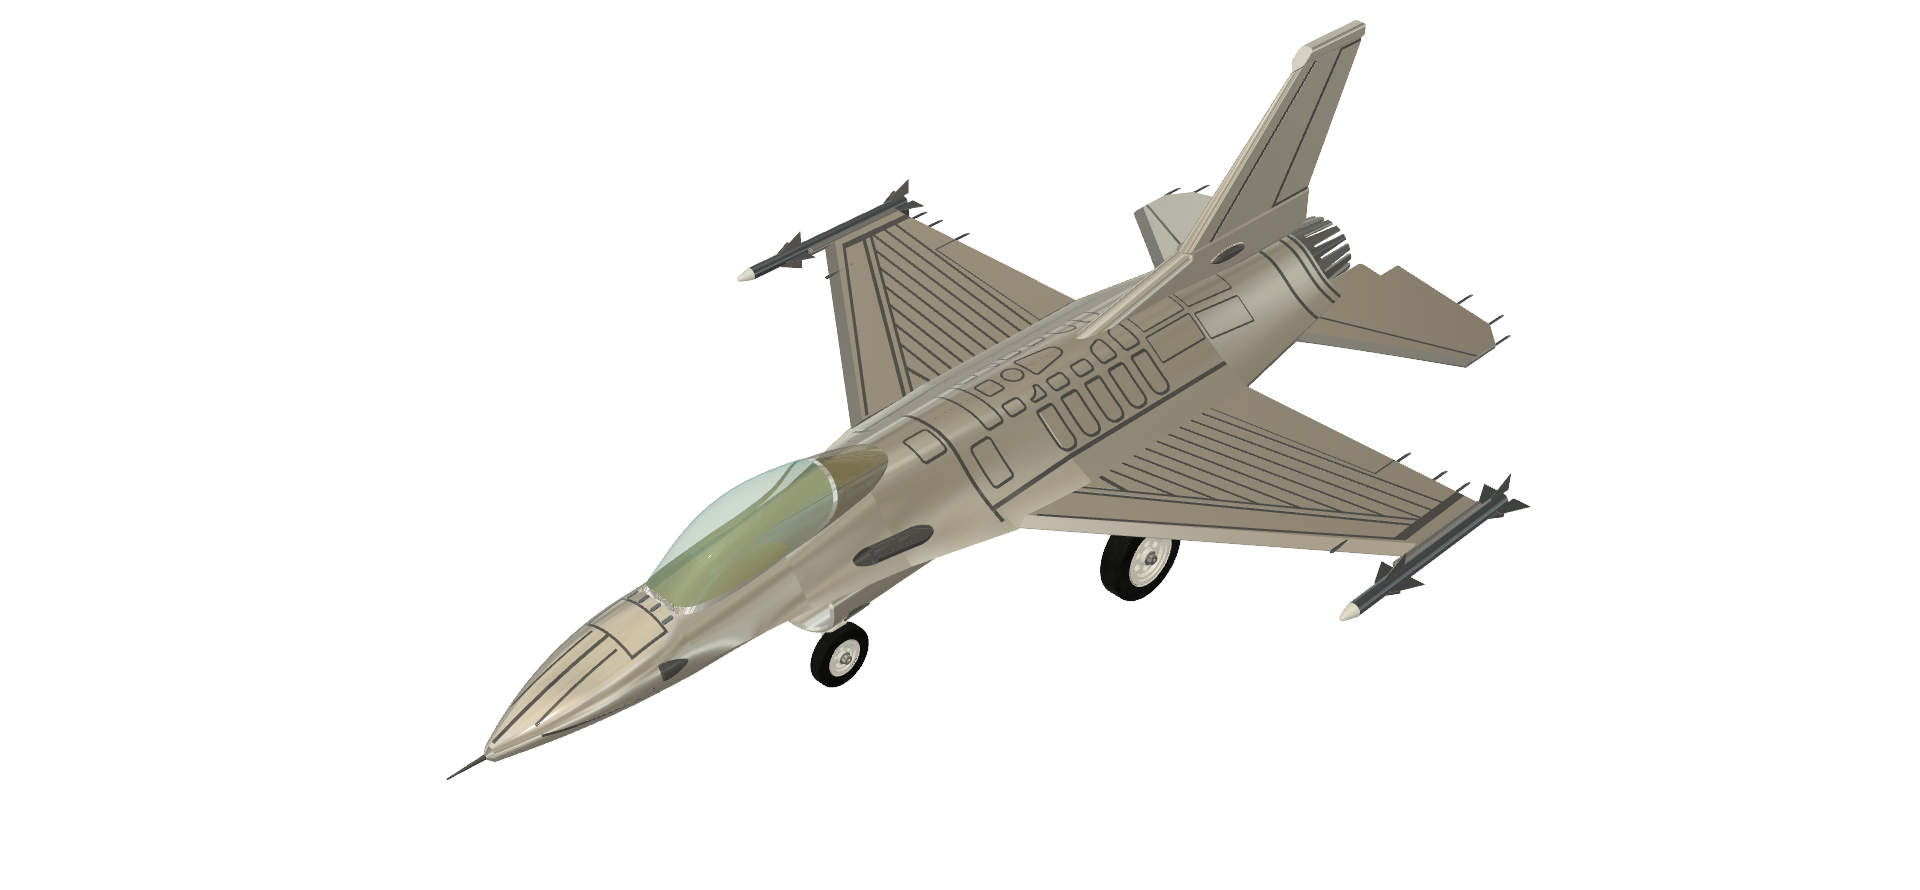 F16战斗机模型